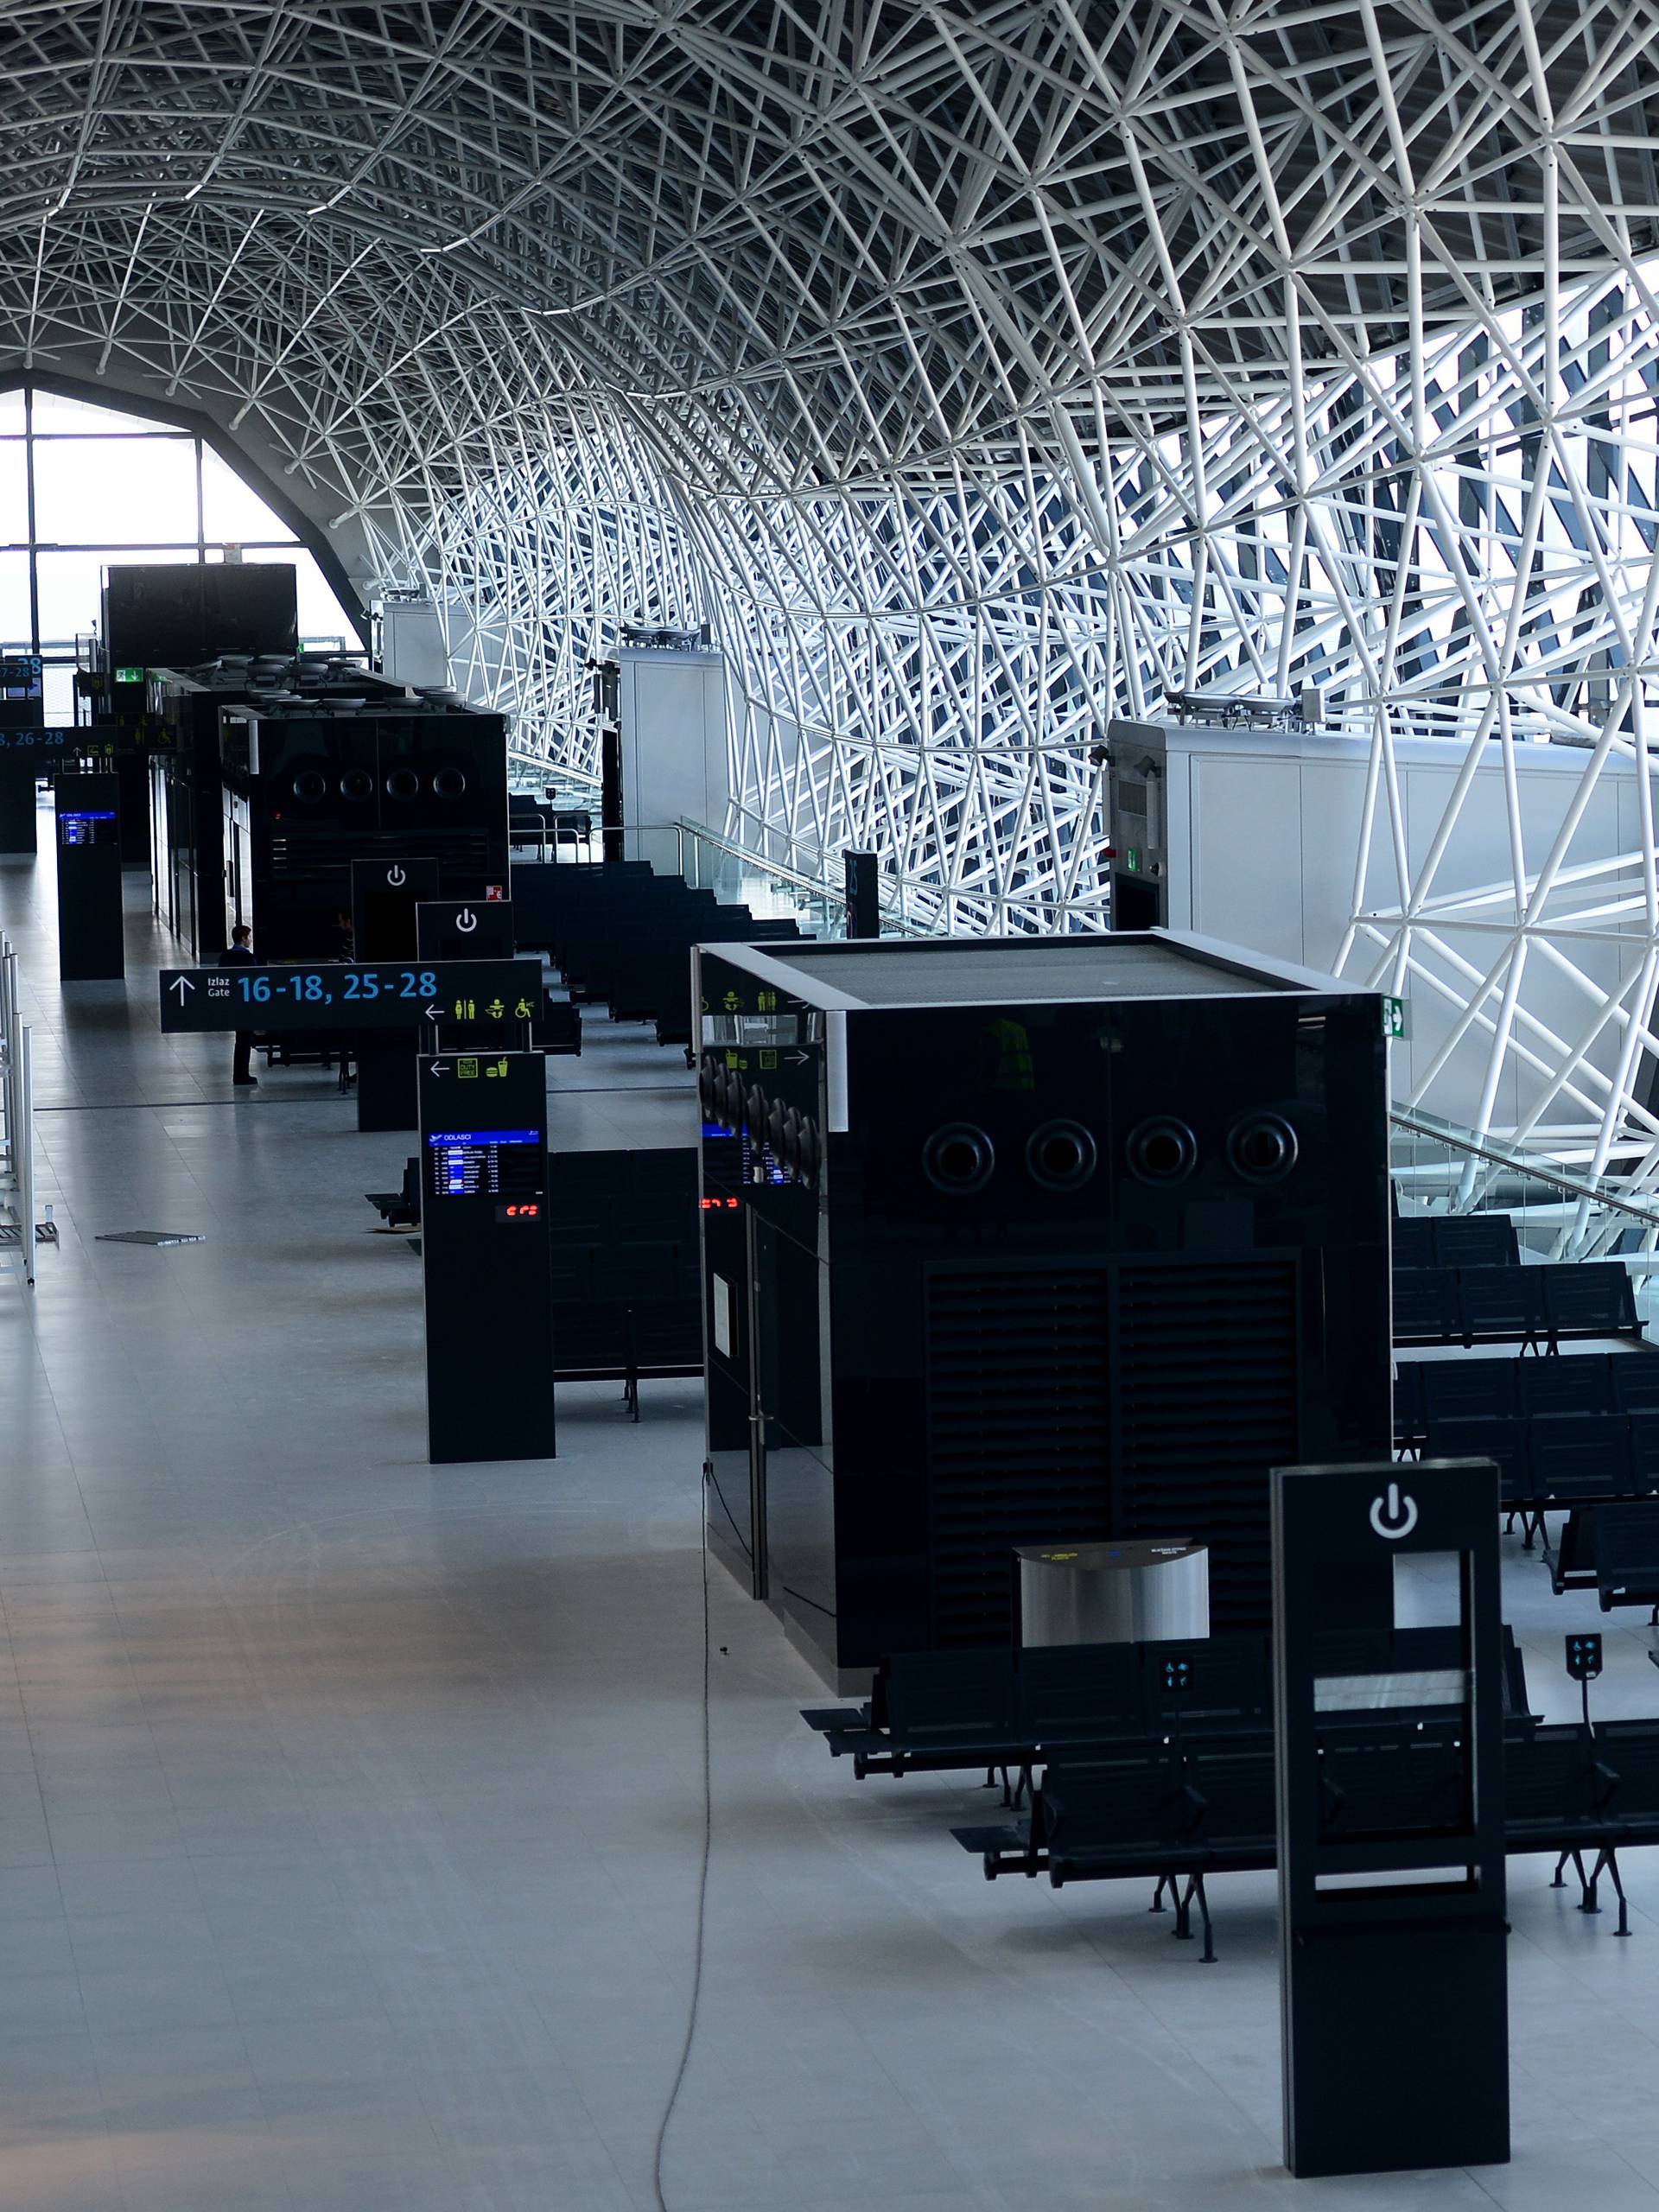 Pogledajte kako izgleda novi terminal zračne luke u Zagrebu